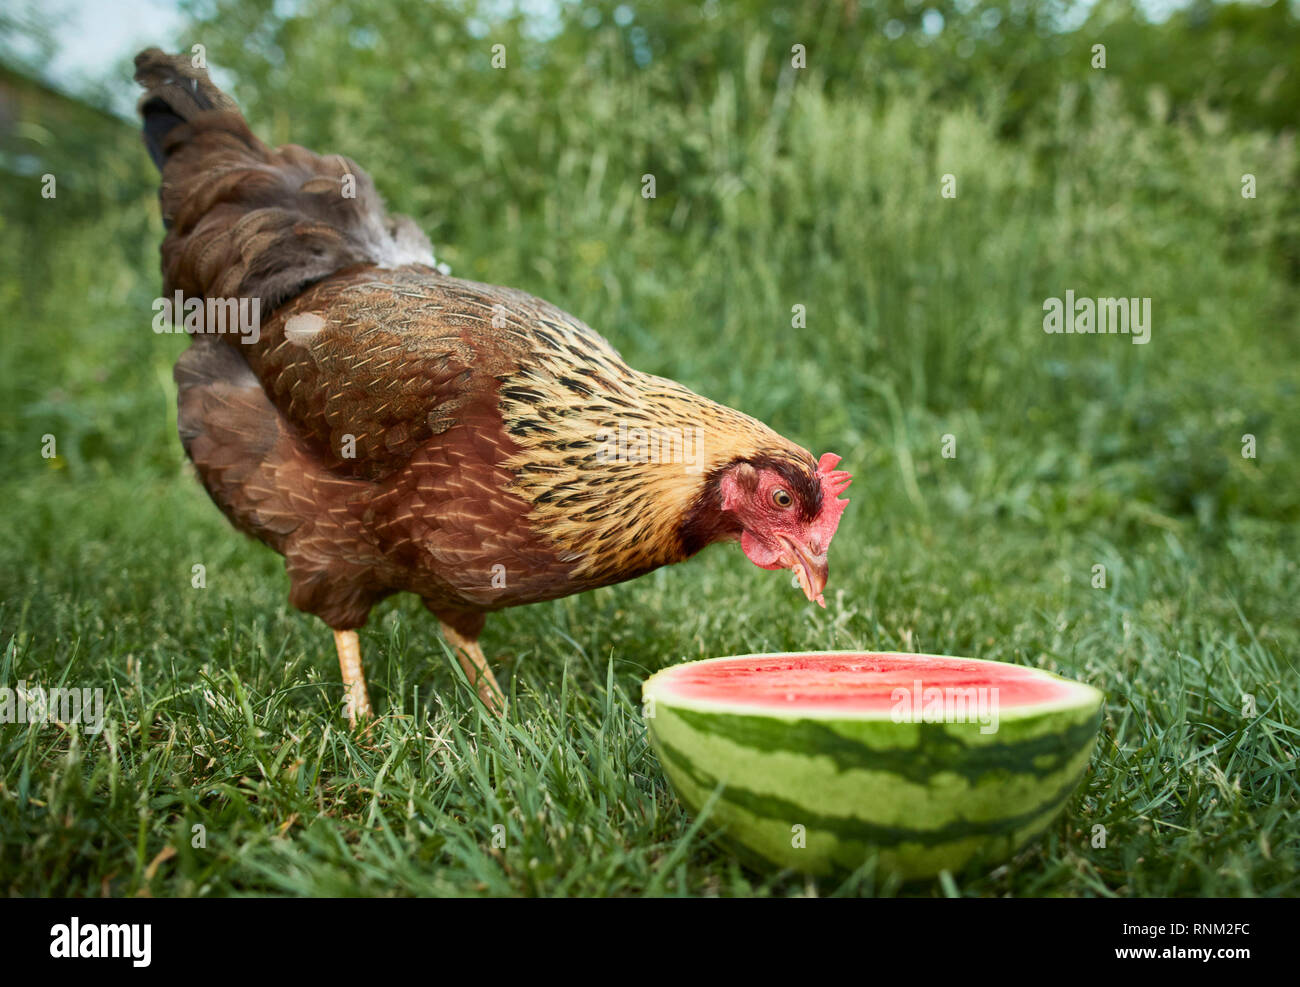 Welsummer poulet. Poule dans un jardin, manger un melon d'eau. L'Allemagne. Banque D'Images